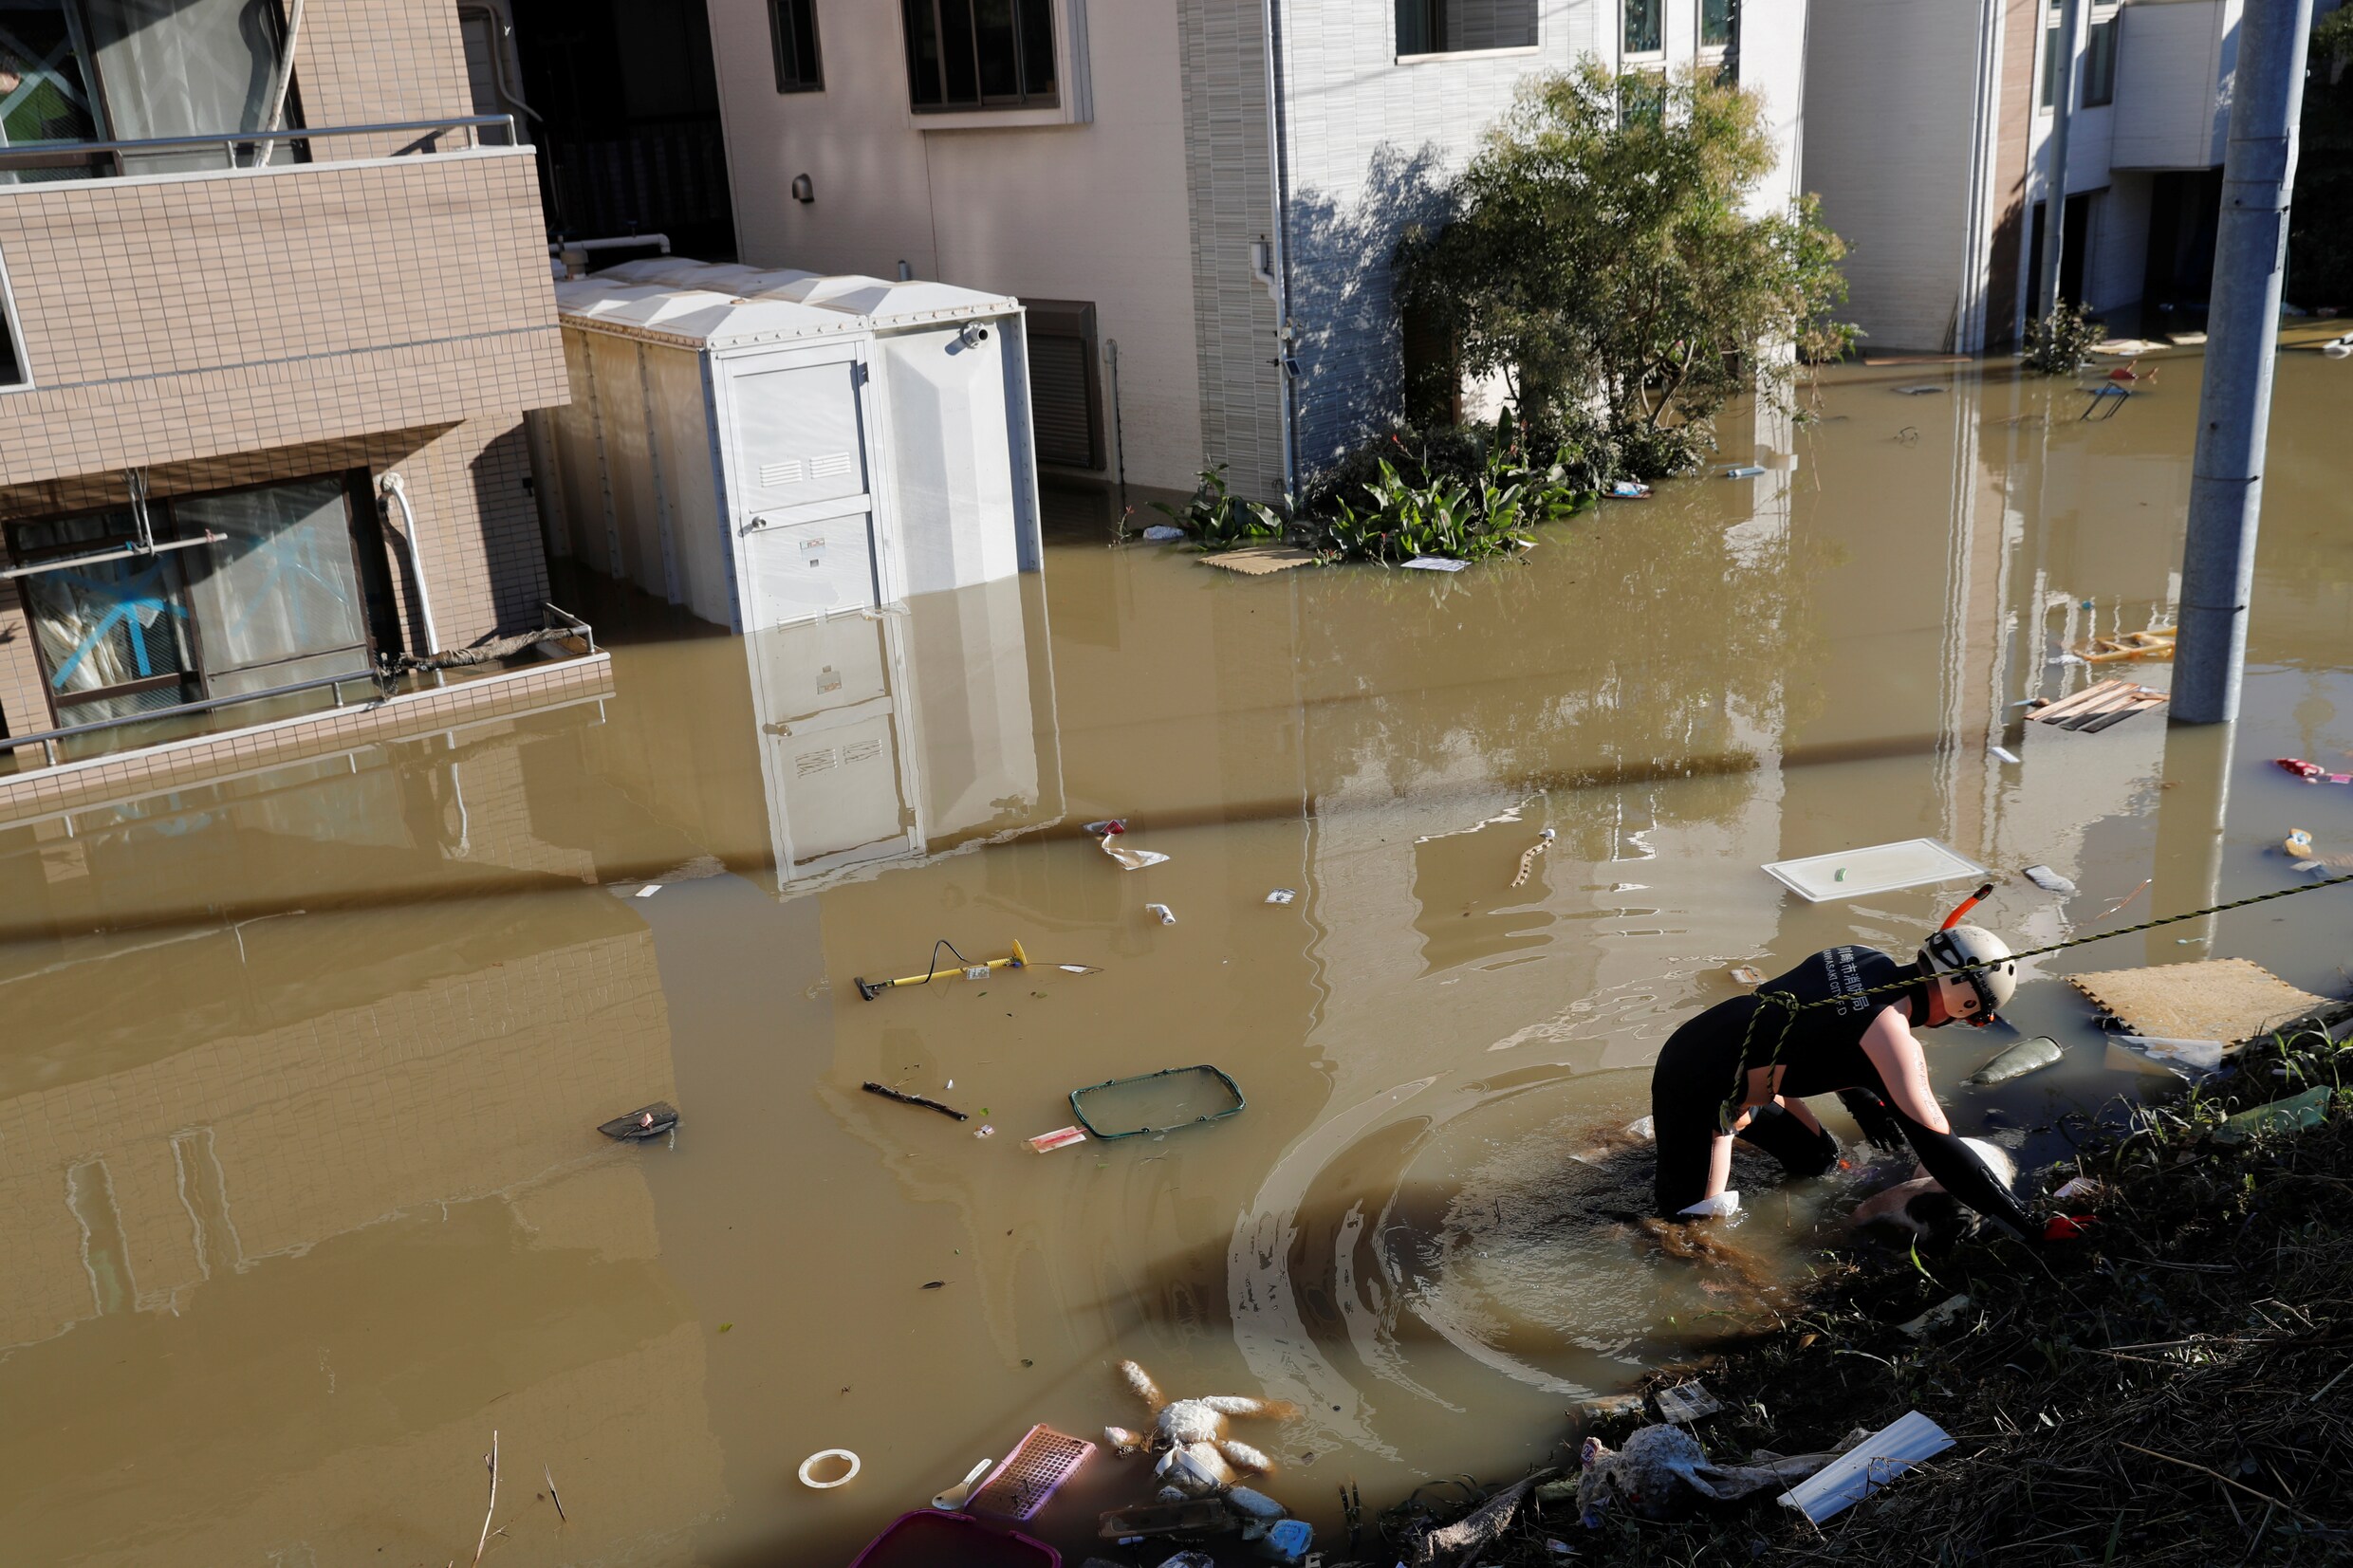 Tyfoon Hagibis raast over Japan: dodental opgelopen tot 23